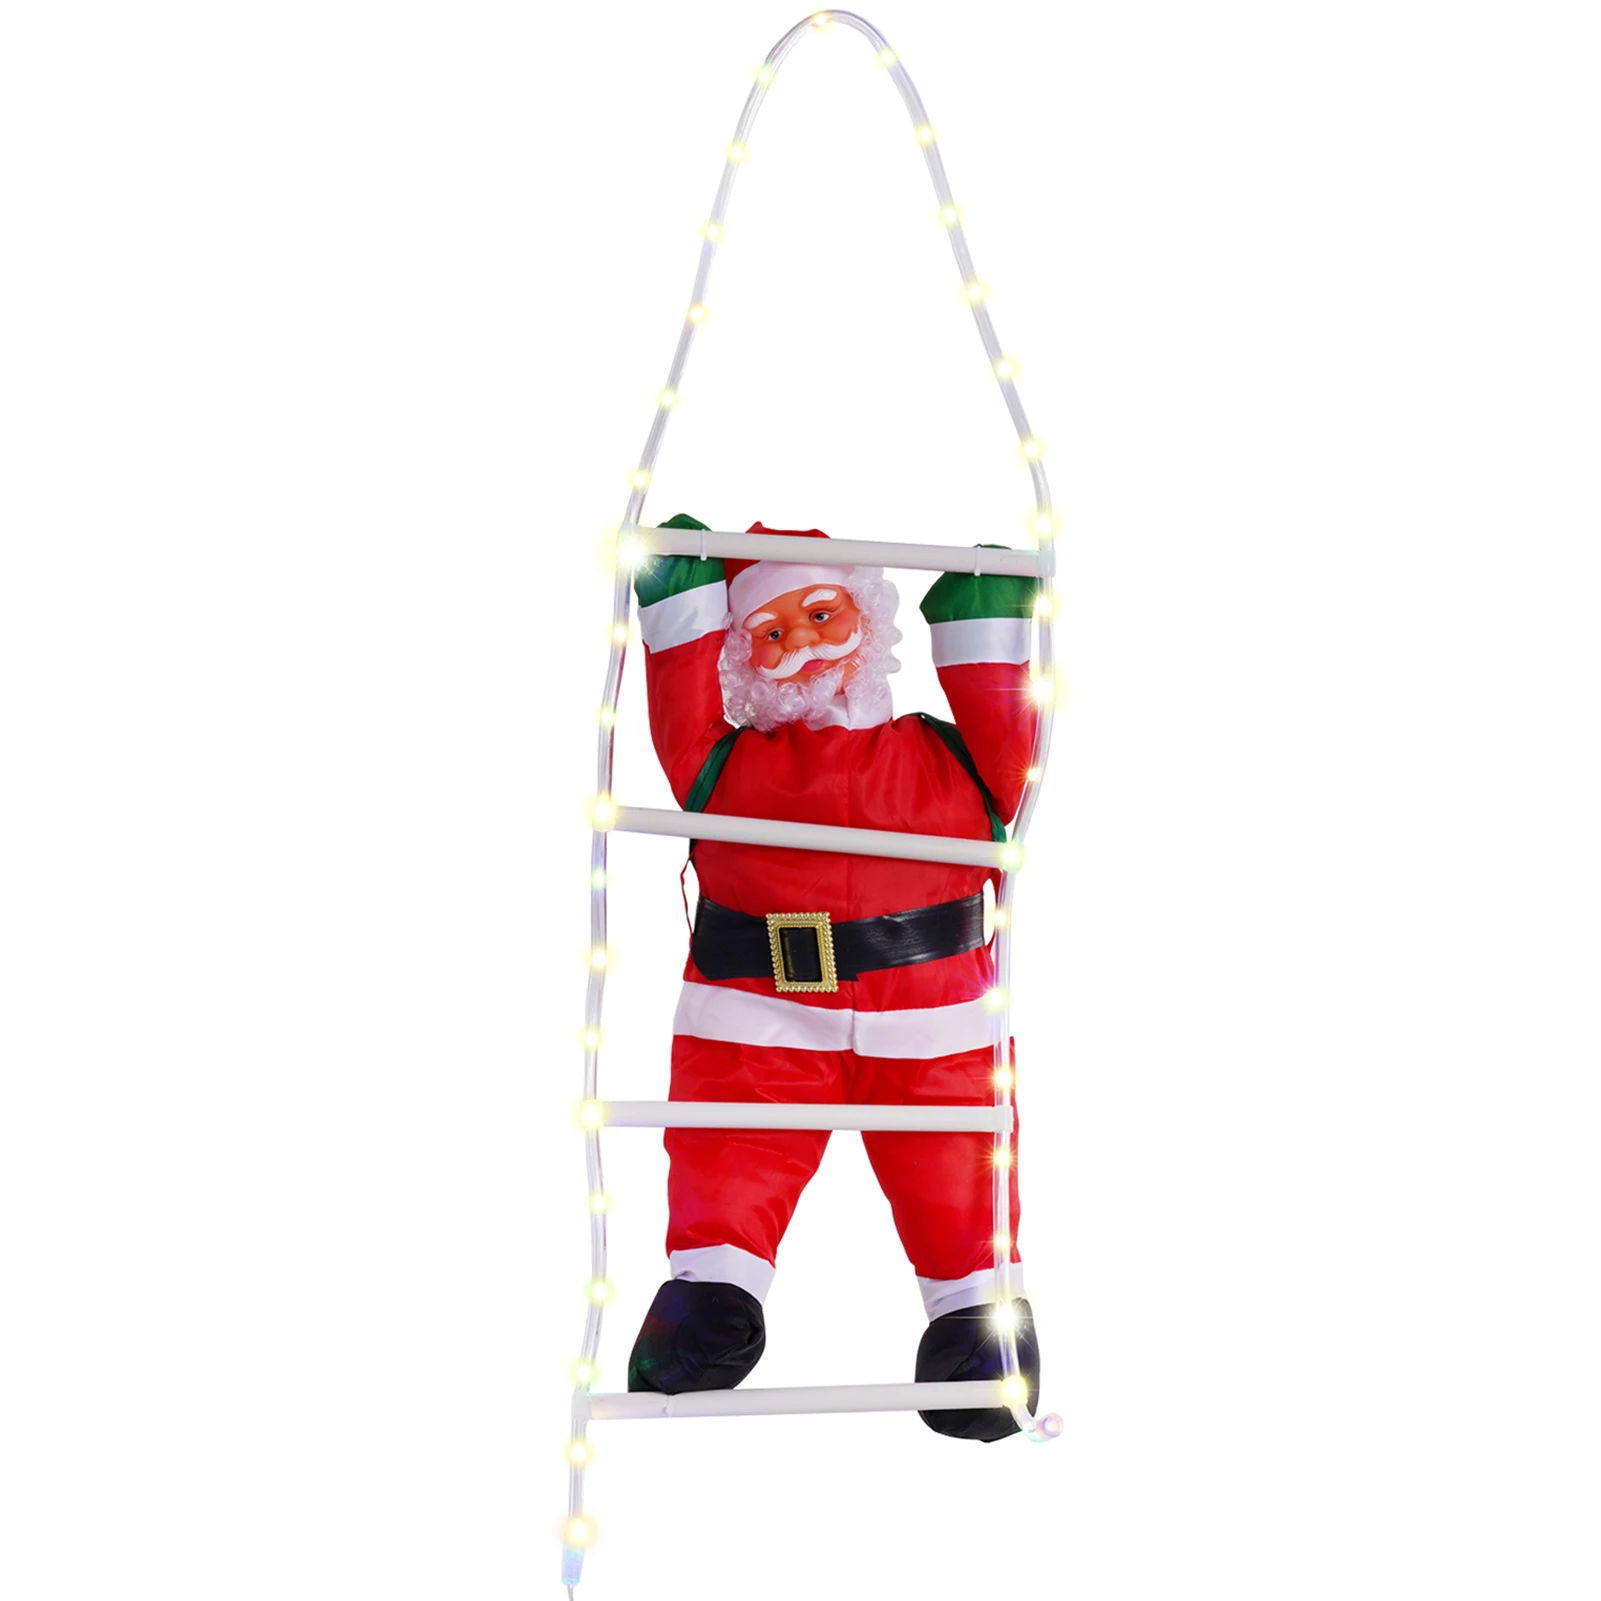 

Светильник Санта Клаус Струны для скалолазания по лестнице, рождественские настенные украшения для рождественской елки, домашний декор, на...